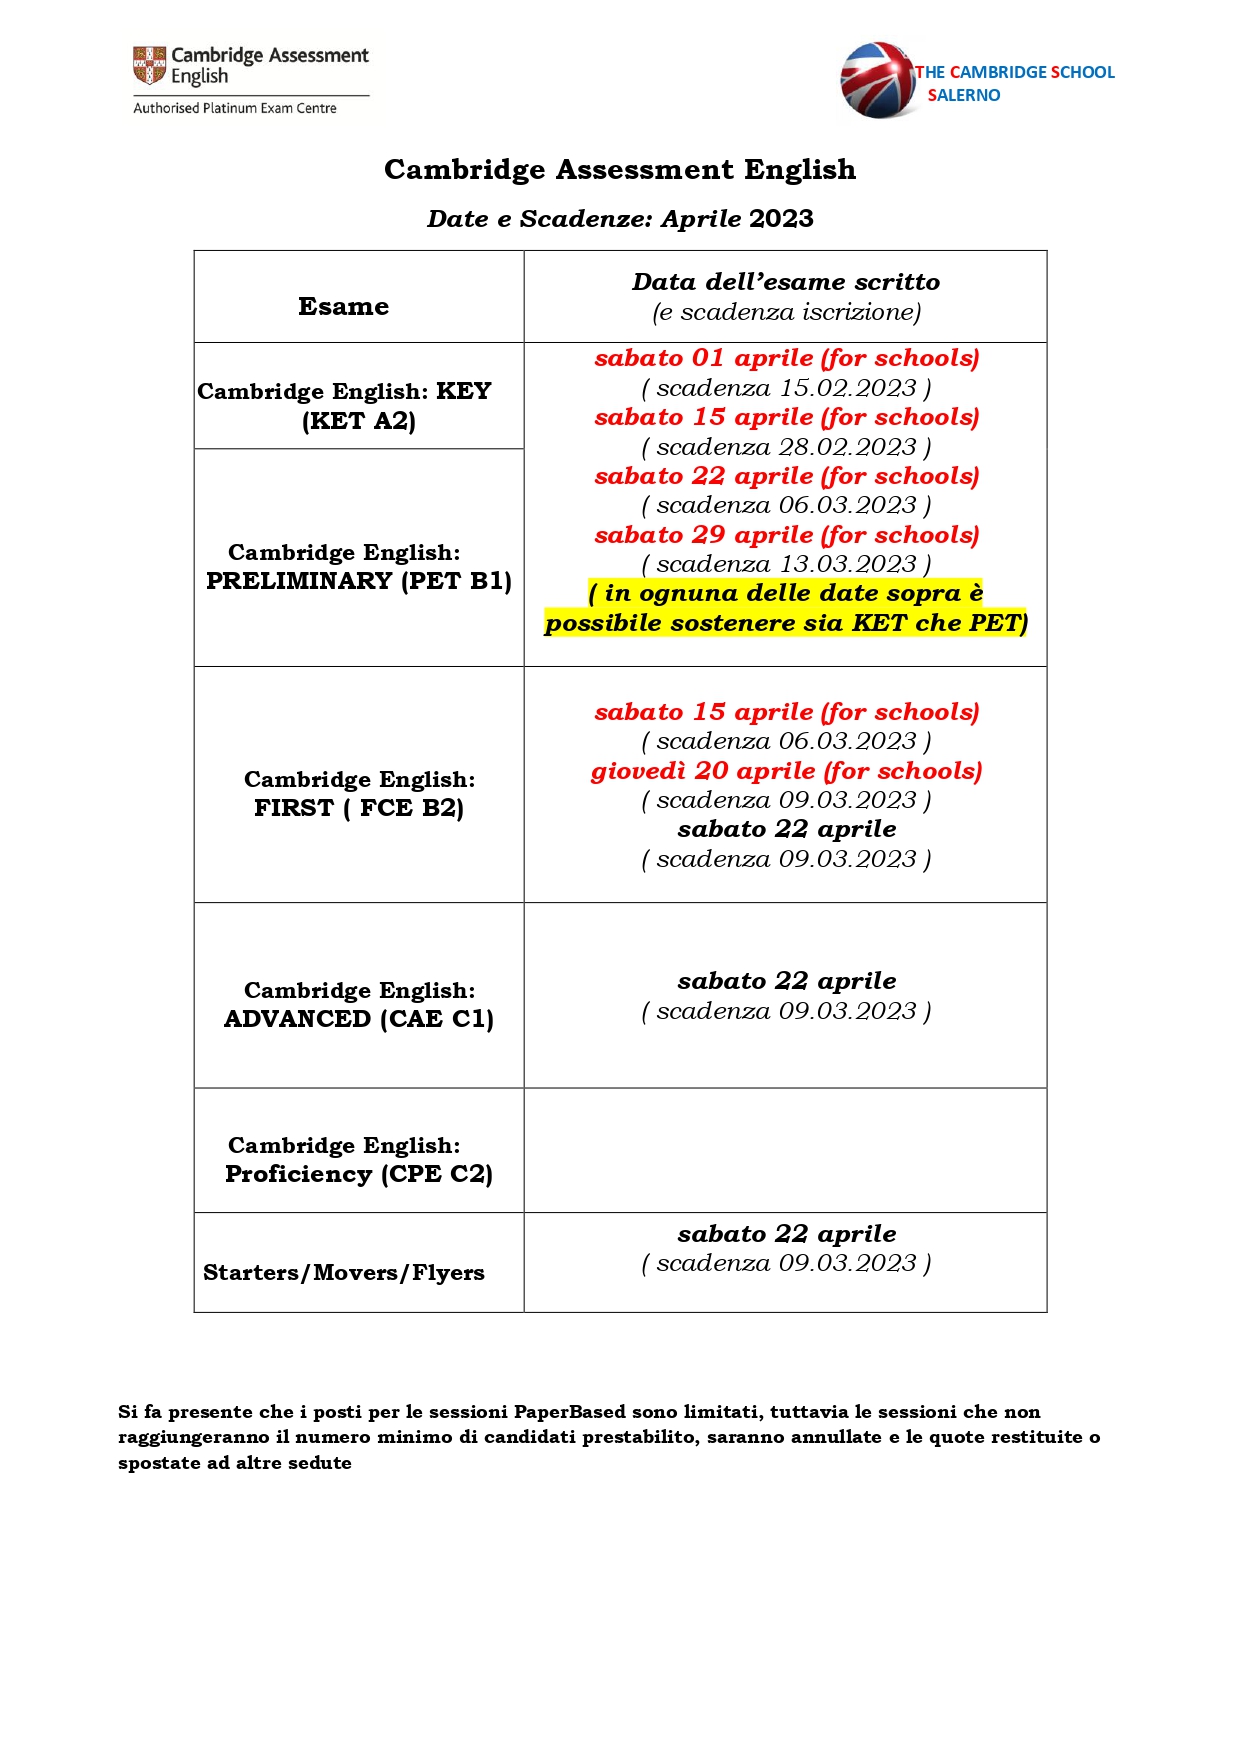 3_Entry form esami e prezzi legati APRILE FULL 2023 Napoli OK_page-0001